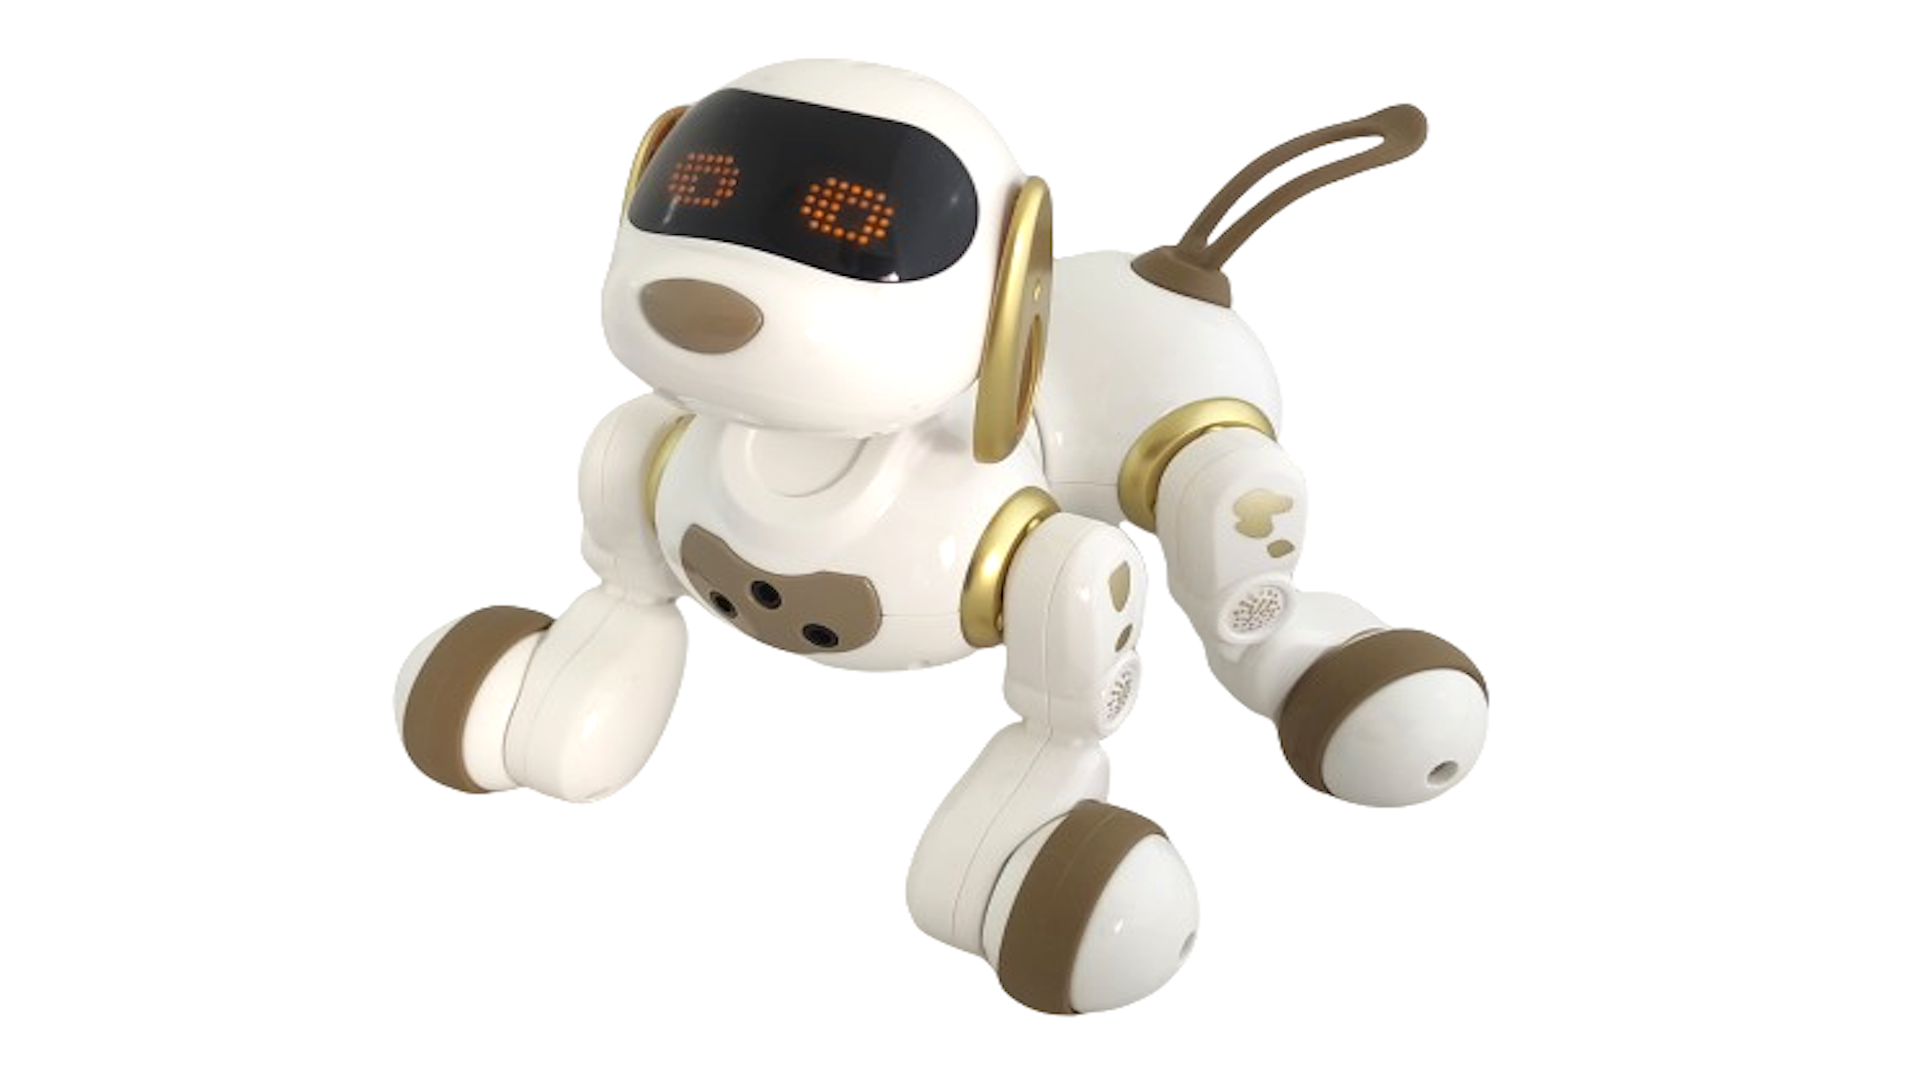 Интерактивная радиоуправляемая собака робот Smart Robot Dog Dexterity AMWELL AW-18011-GOLD собака робот интерактивная чаппи звуковые и световые эффекты ходит золотой